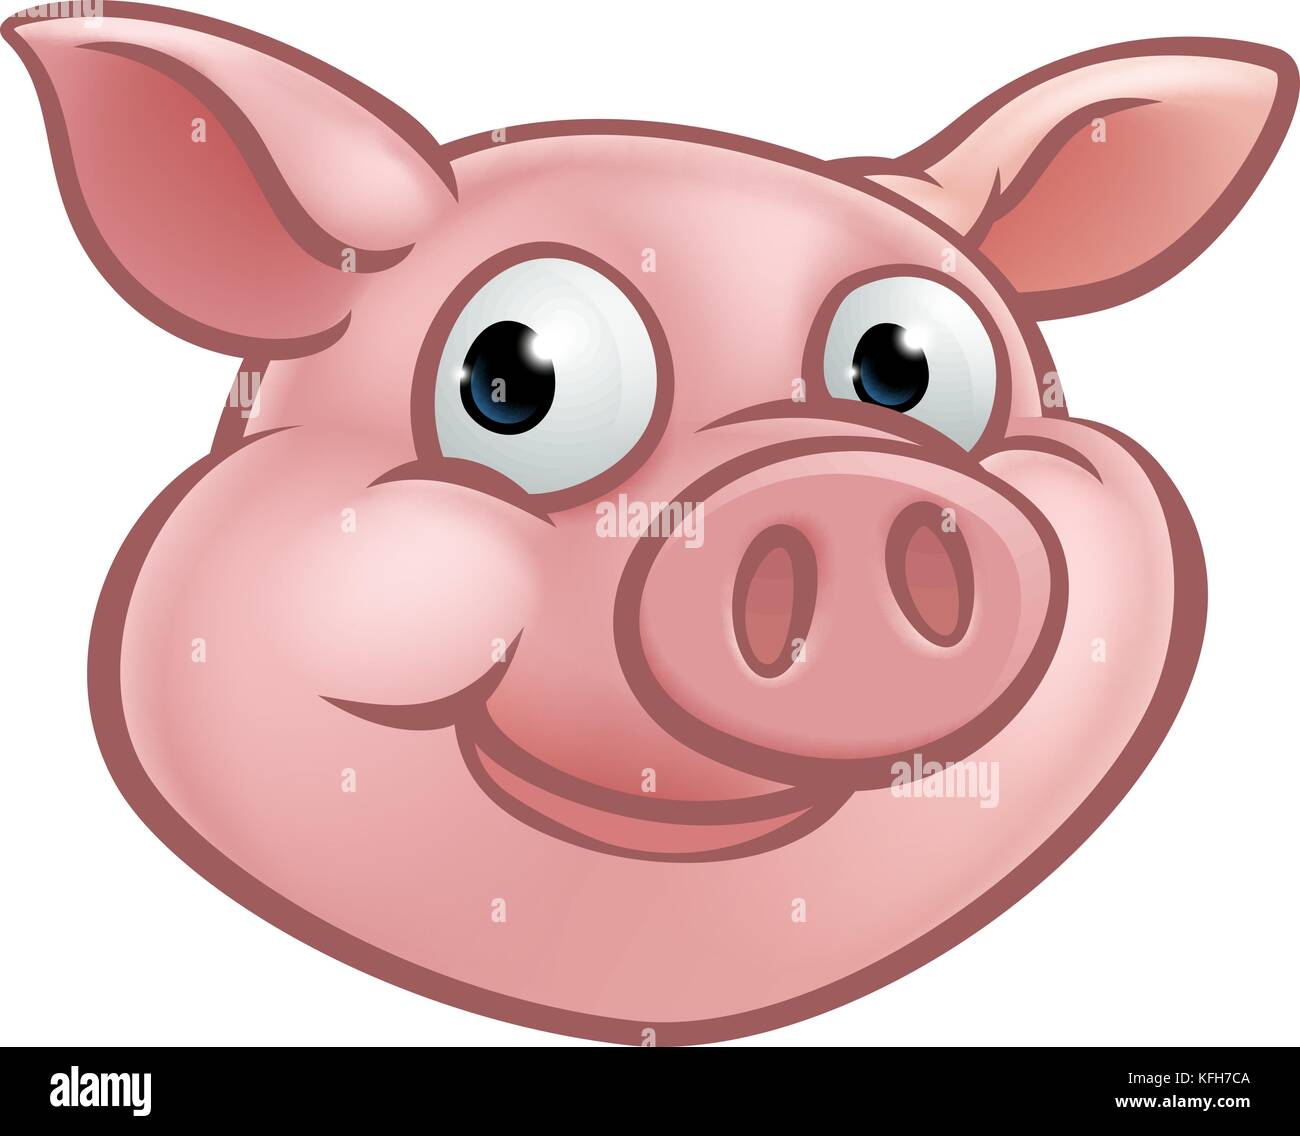 Cute Cartoon Pig Character Mascot Stock Vector